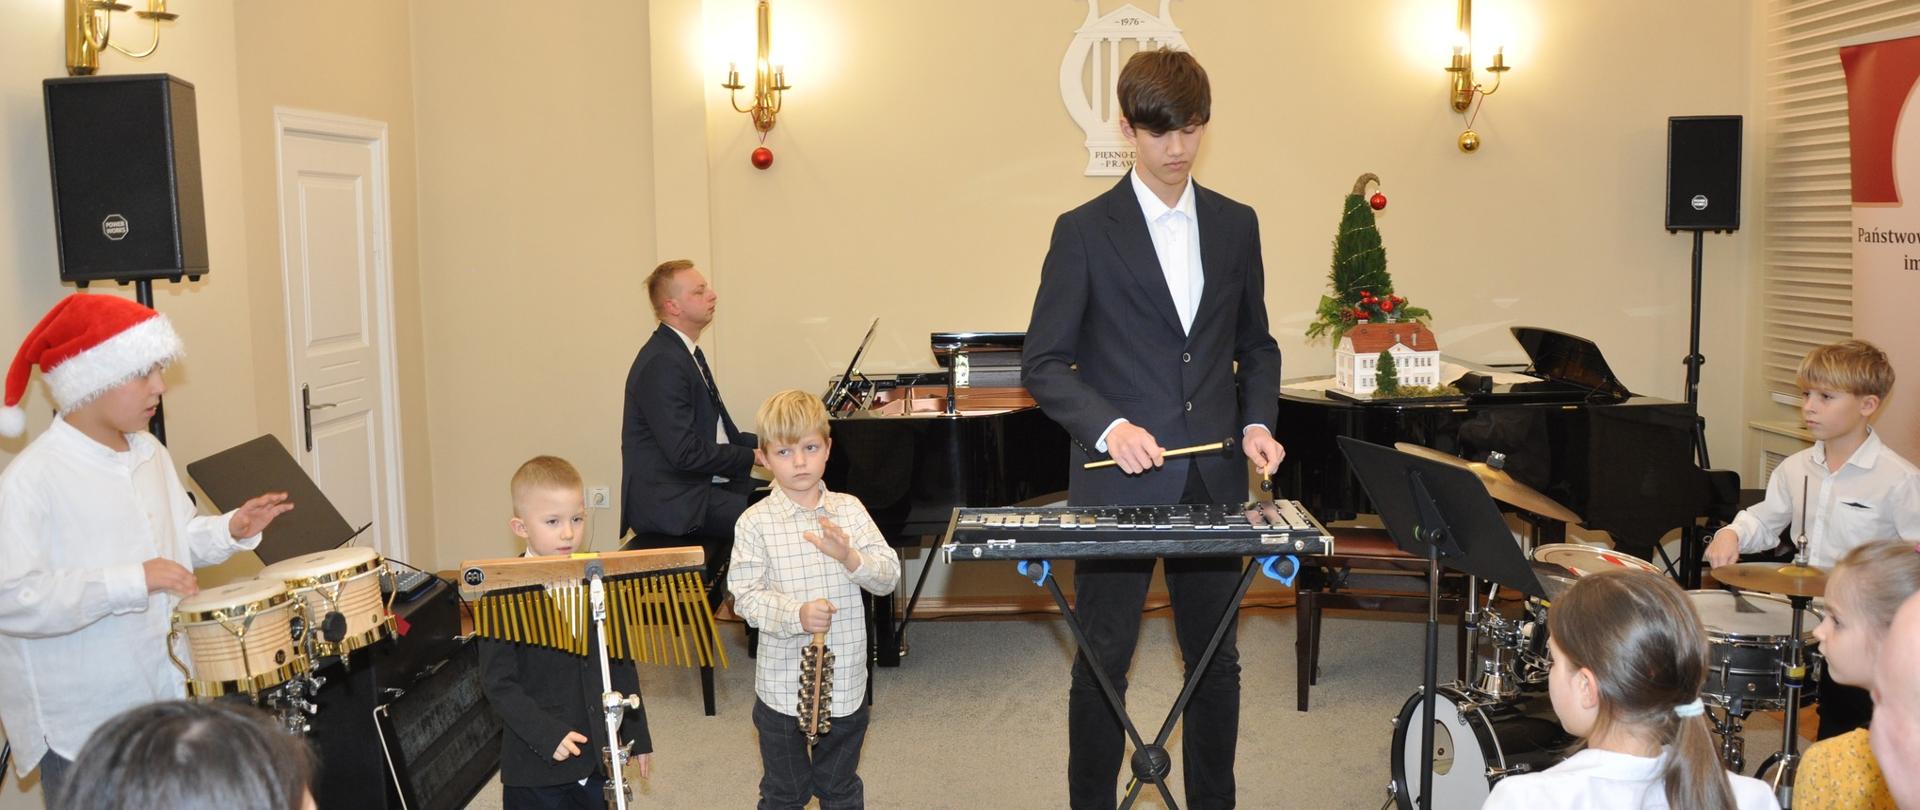 Występ zespołu perkusyjnego podczas koncertu świątecznego w auli szkoły. W tle przy fortepianie akompaniuje p. Szymon Franek.